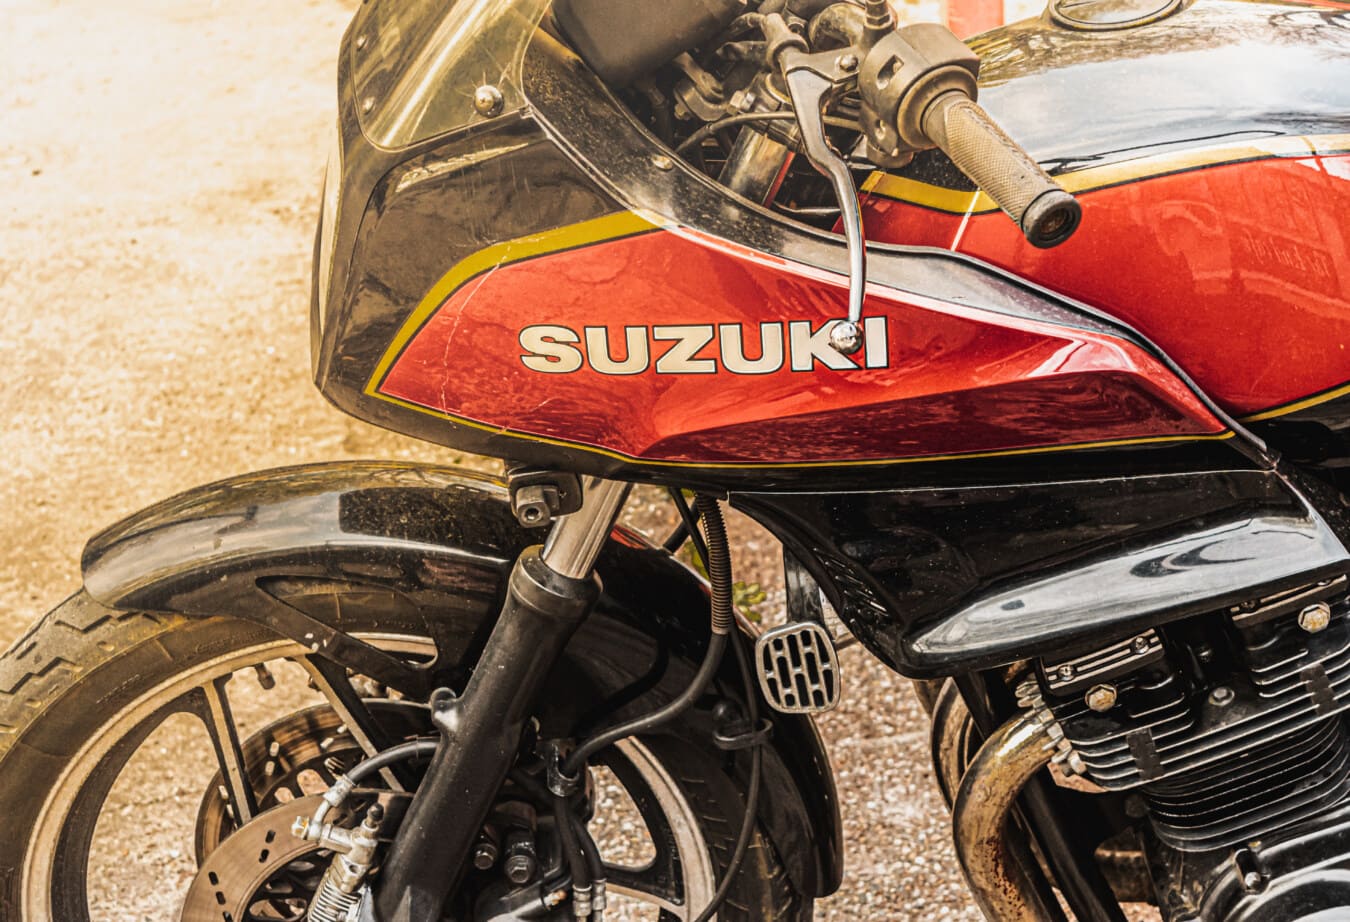 Suzuki, metálicos, rojo oscuro, motos, moto, rueda de manejo, motor de, vehículo, clásico, retro